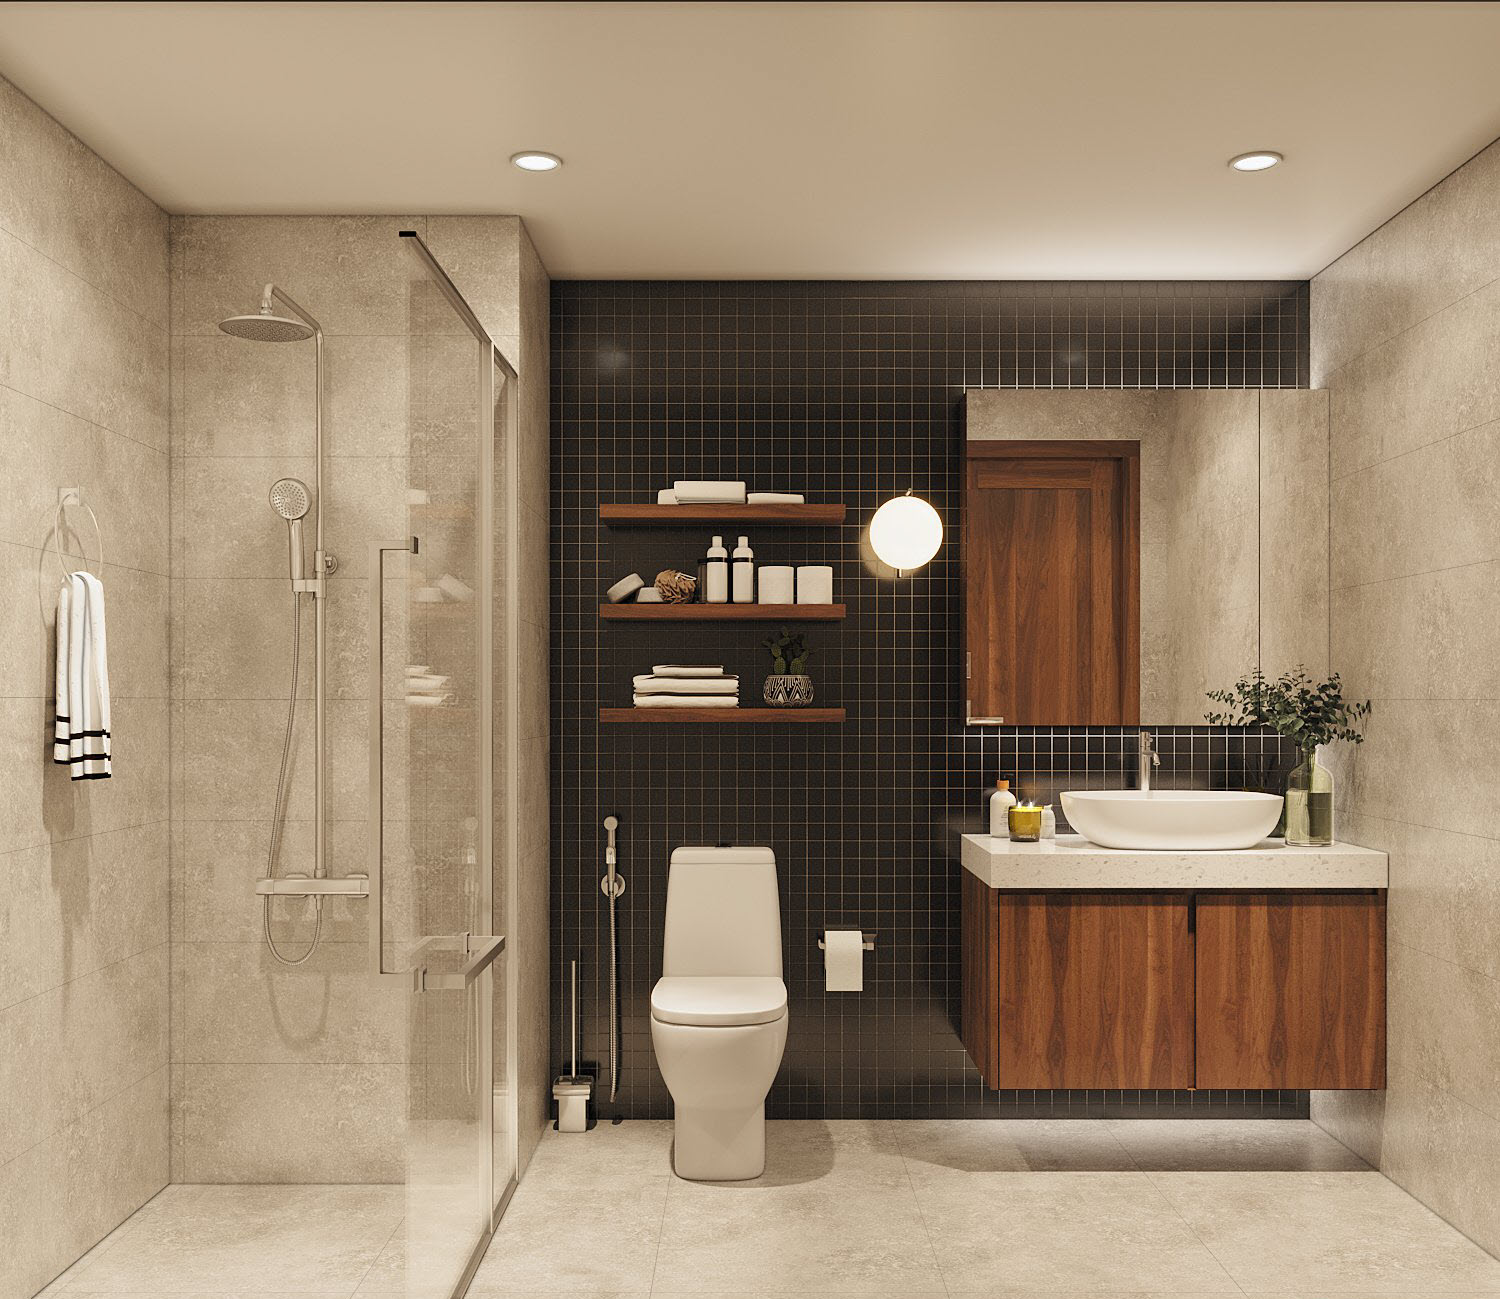 Phòng tắm, vệ sinh thiết kế đơn giản mà ấn tượng với mảng tường ốp gạch thẻ màu đen giúp gia tăng chiều sâu cho căn phòng.